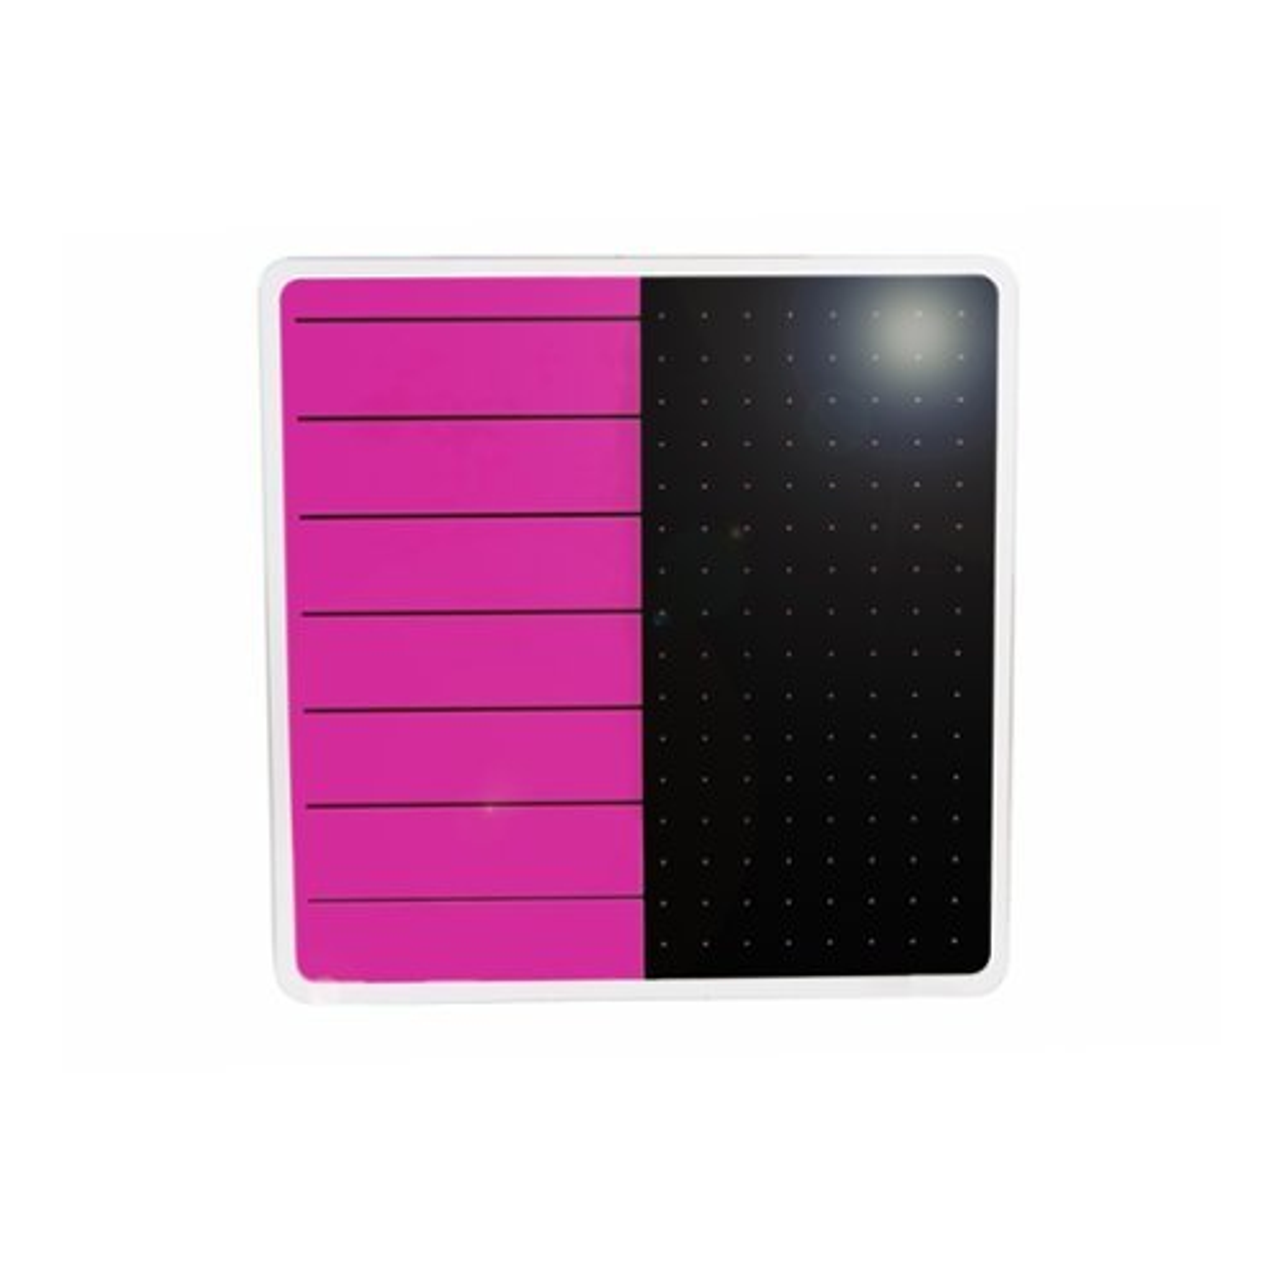 Floortex Glass Magnetic Planning Board 14" x 14" in Violet & Black - Violet